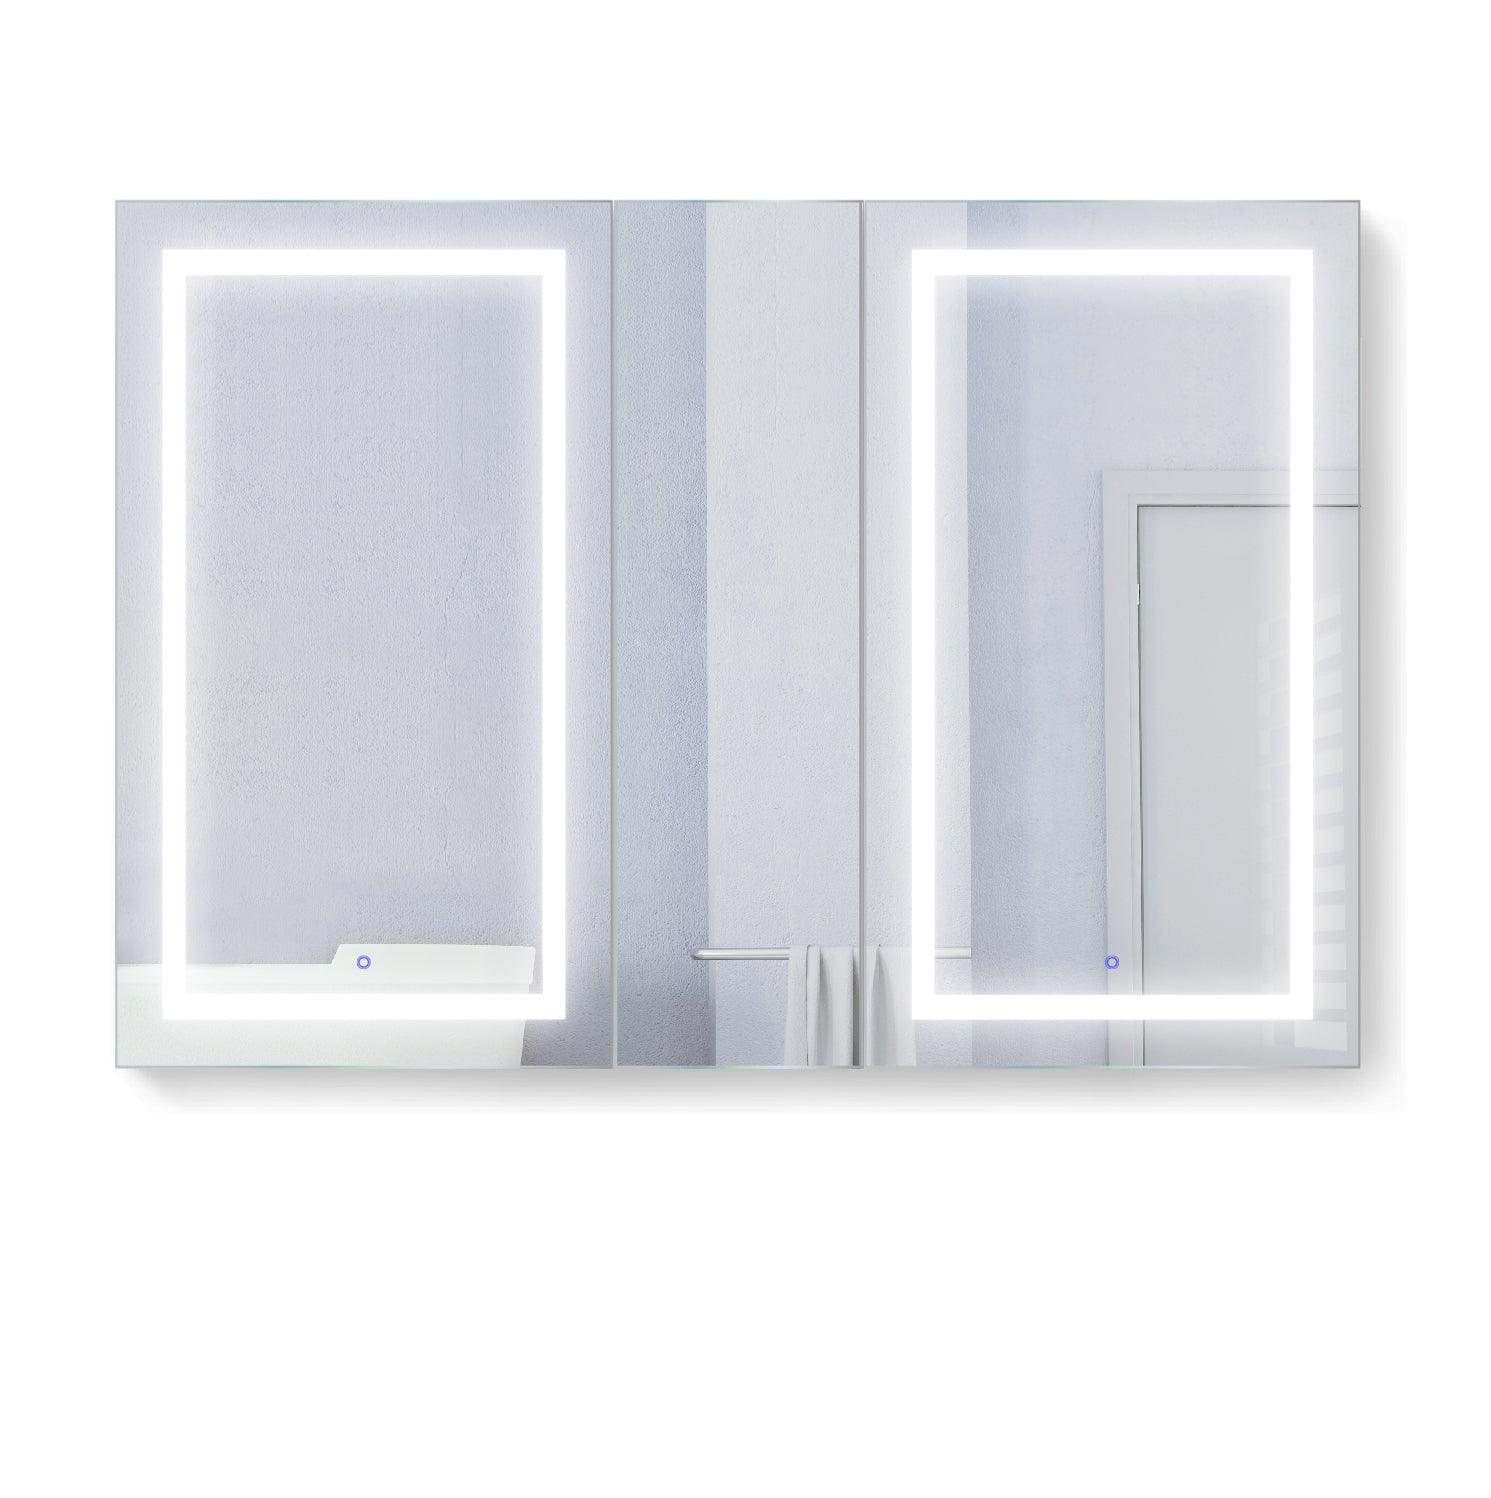 Krugg Svange 60″ X 42″ Double LED Medicine Cabinet w/Dimmer & Defogger